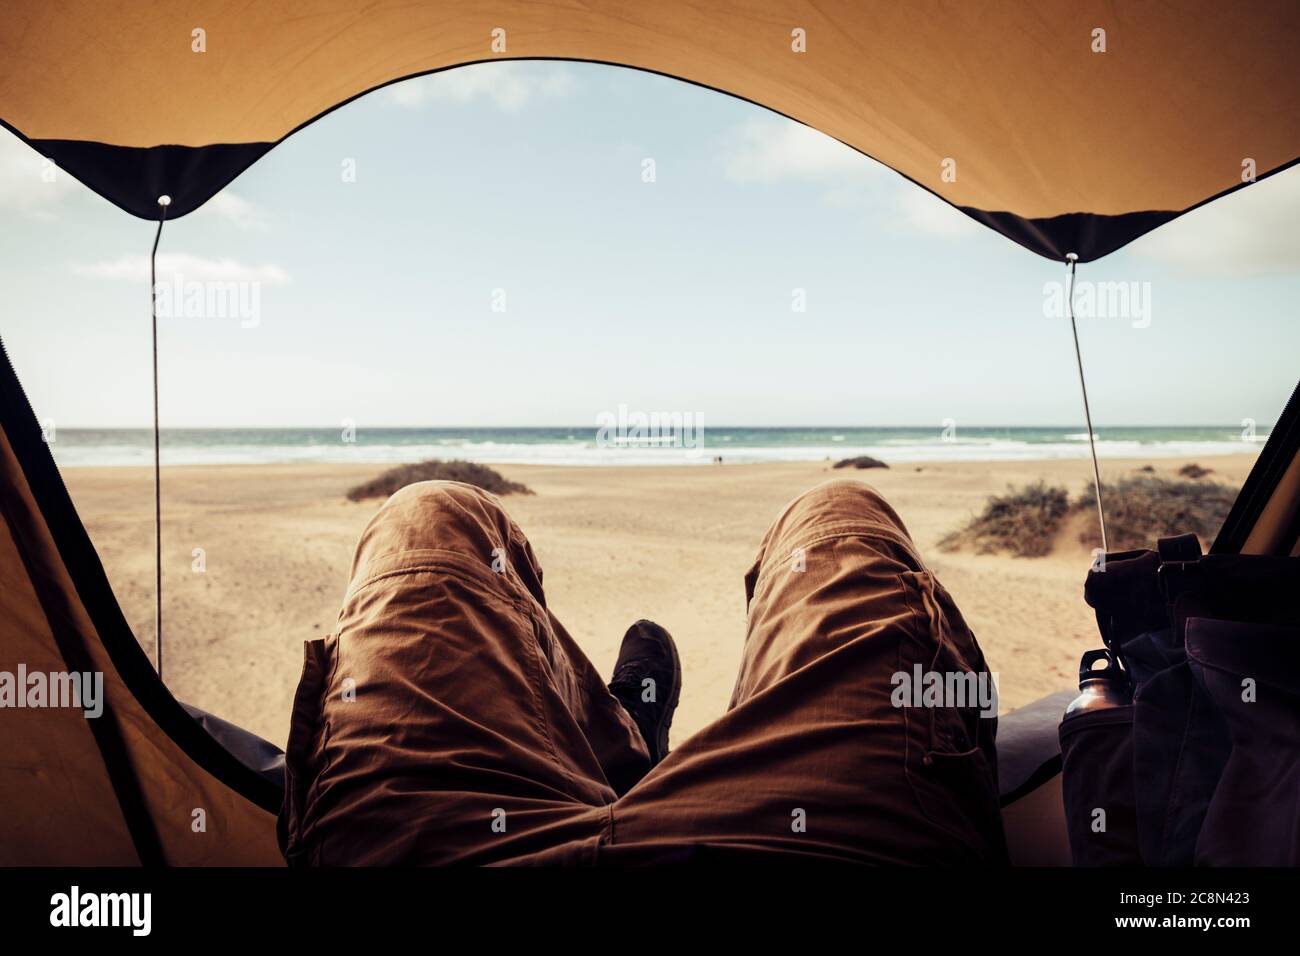 Détendez-vous et profitez de vacances d'été en camping tente sur une vue gratuite sur la plage du désert - homme méconnaissable couché et profiter à l'intérieur du petit t Banque D'Images